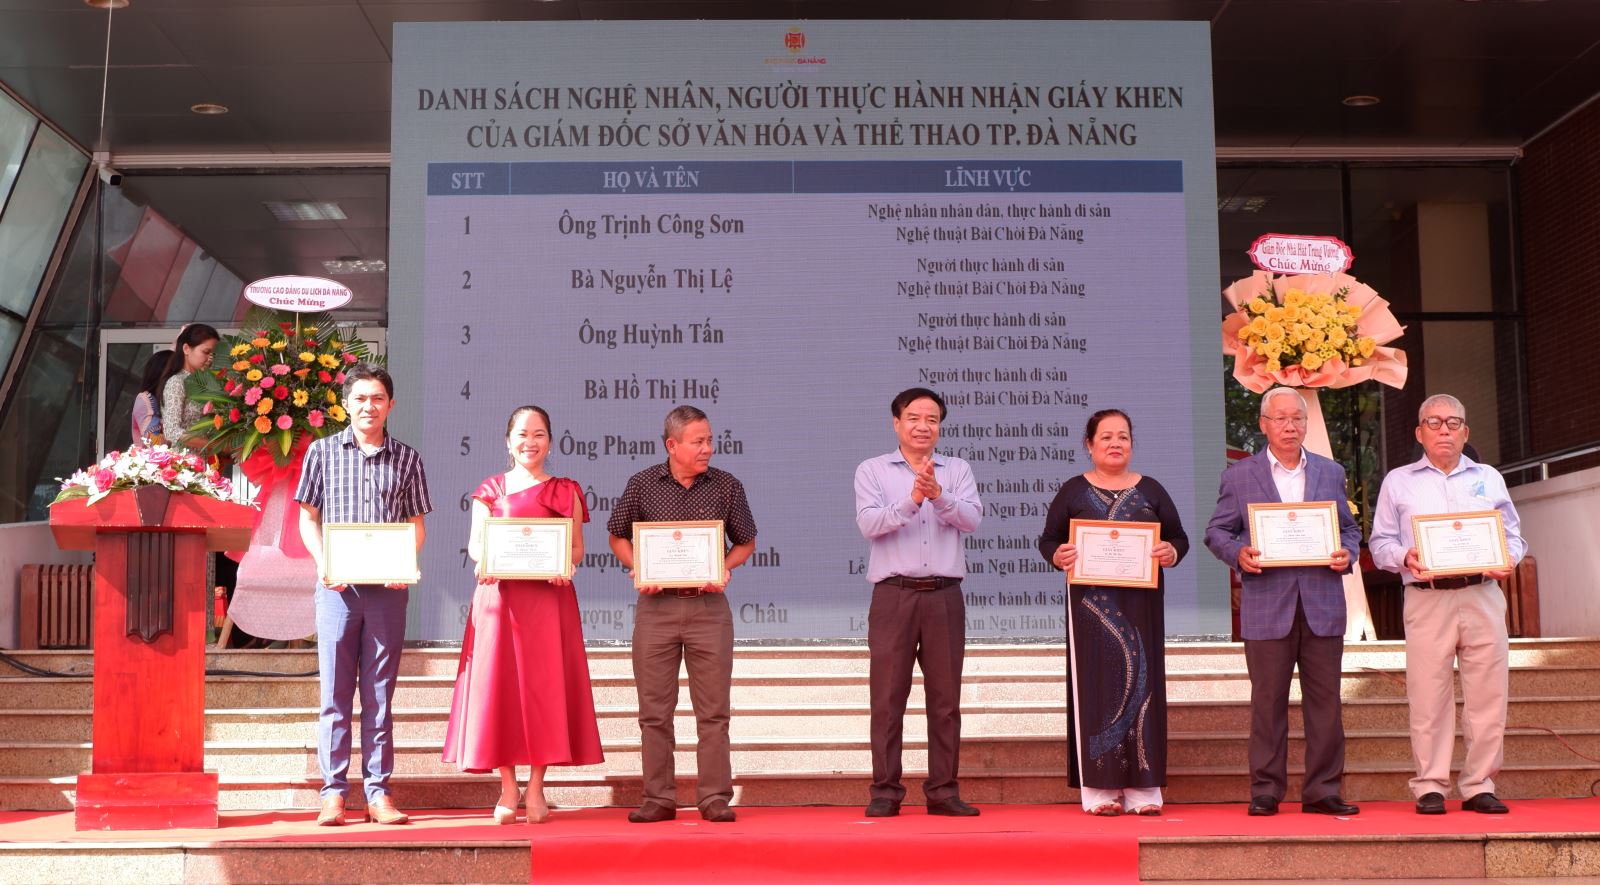 Ngày 25-11-2022, Bảo tàng Đà Nẵng đã tổ chức chương trình “Ngày hội Di sản Văn hóa Đà Nẵng năm 2022” với chủ đề “Ẩm thực Đà Nẵng - Hương vị và Ký ức”.